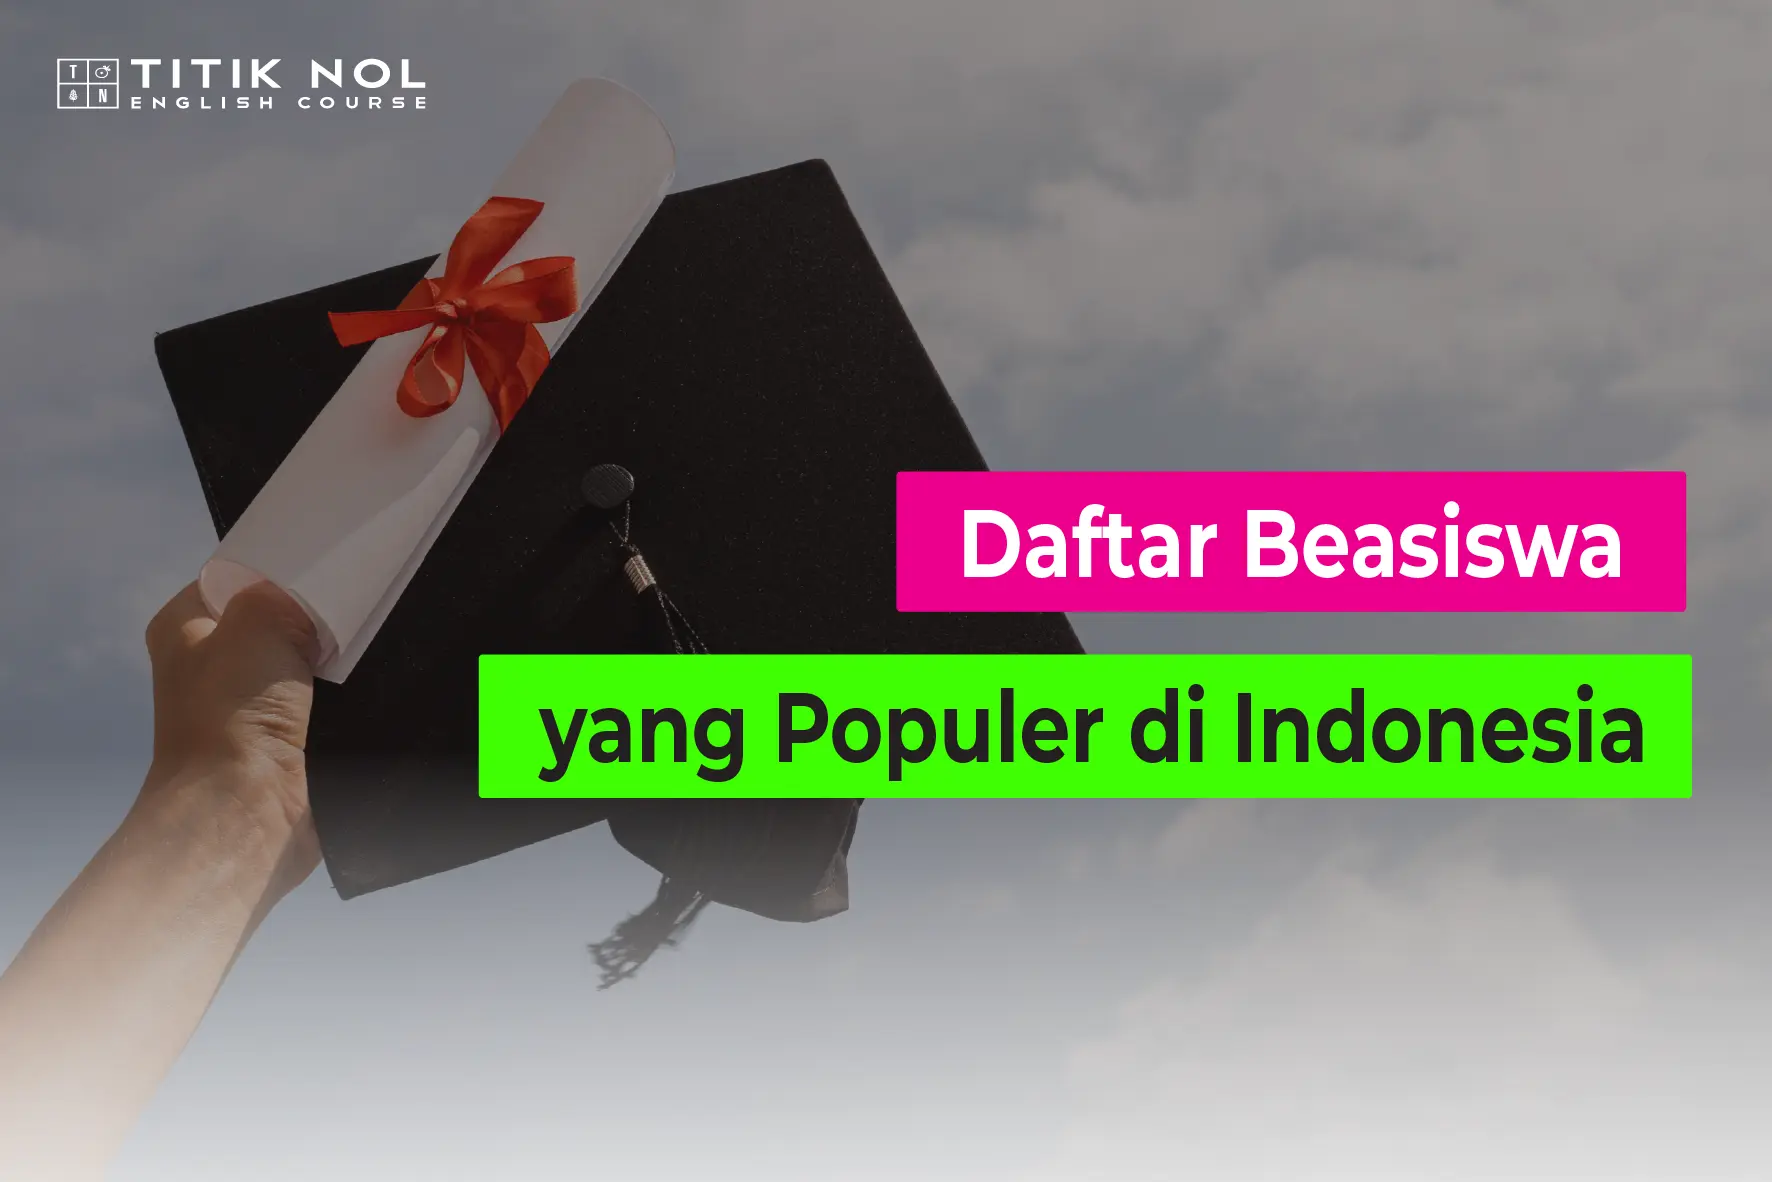 Beasiswa yang Populer di Indonesia